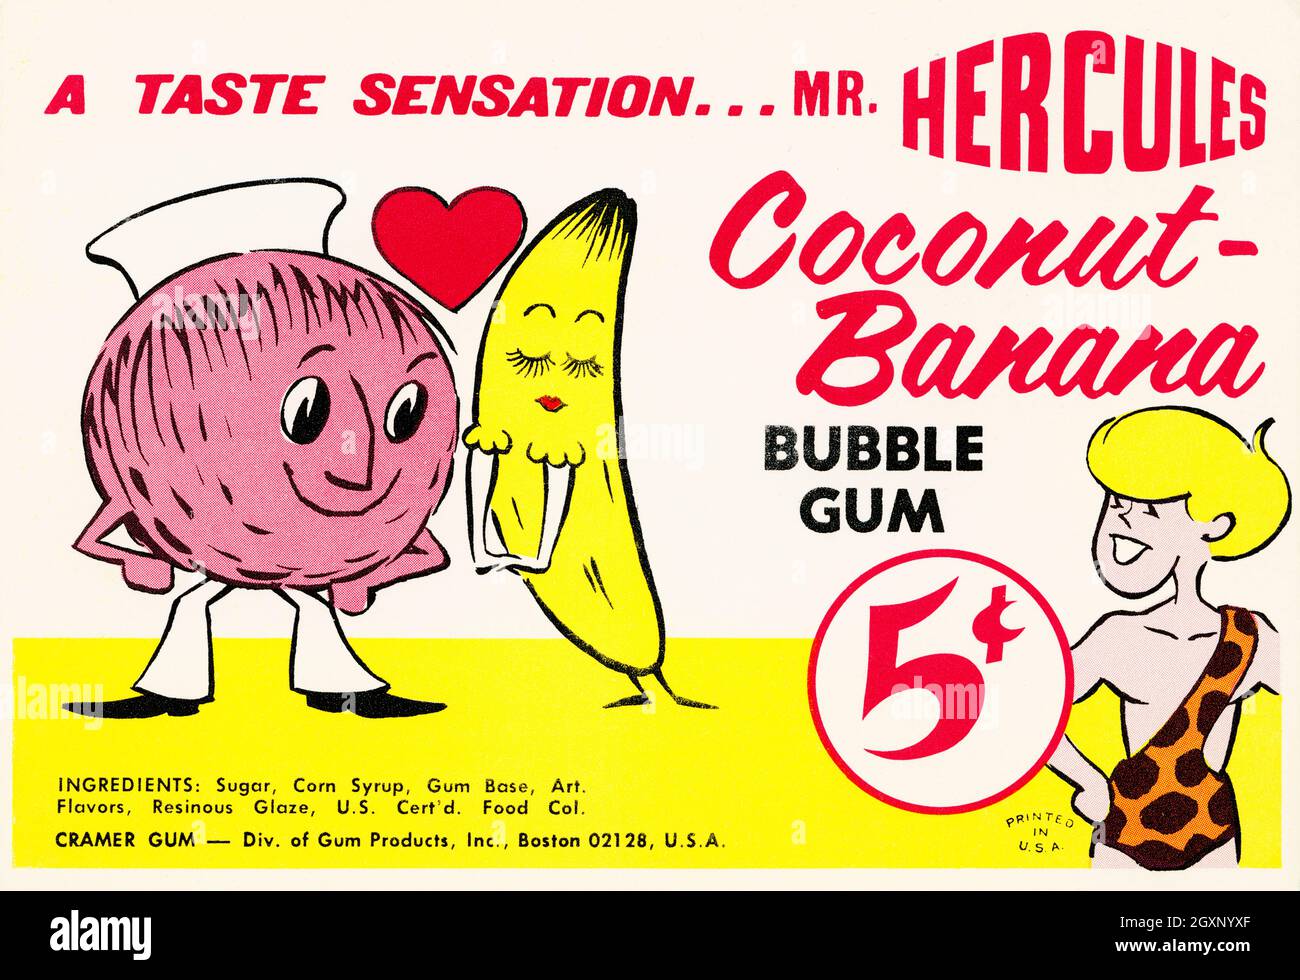 Sr. Hercules Coconut-Banana Foto de stock